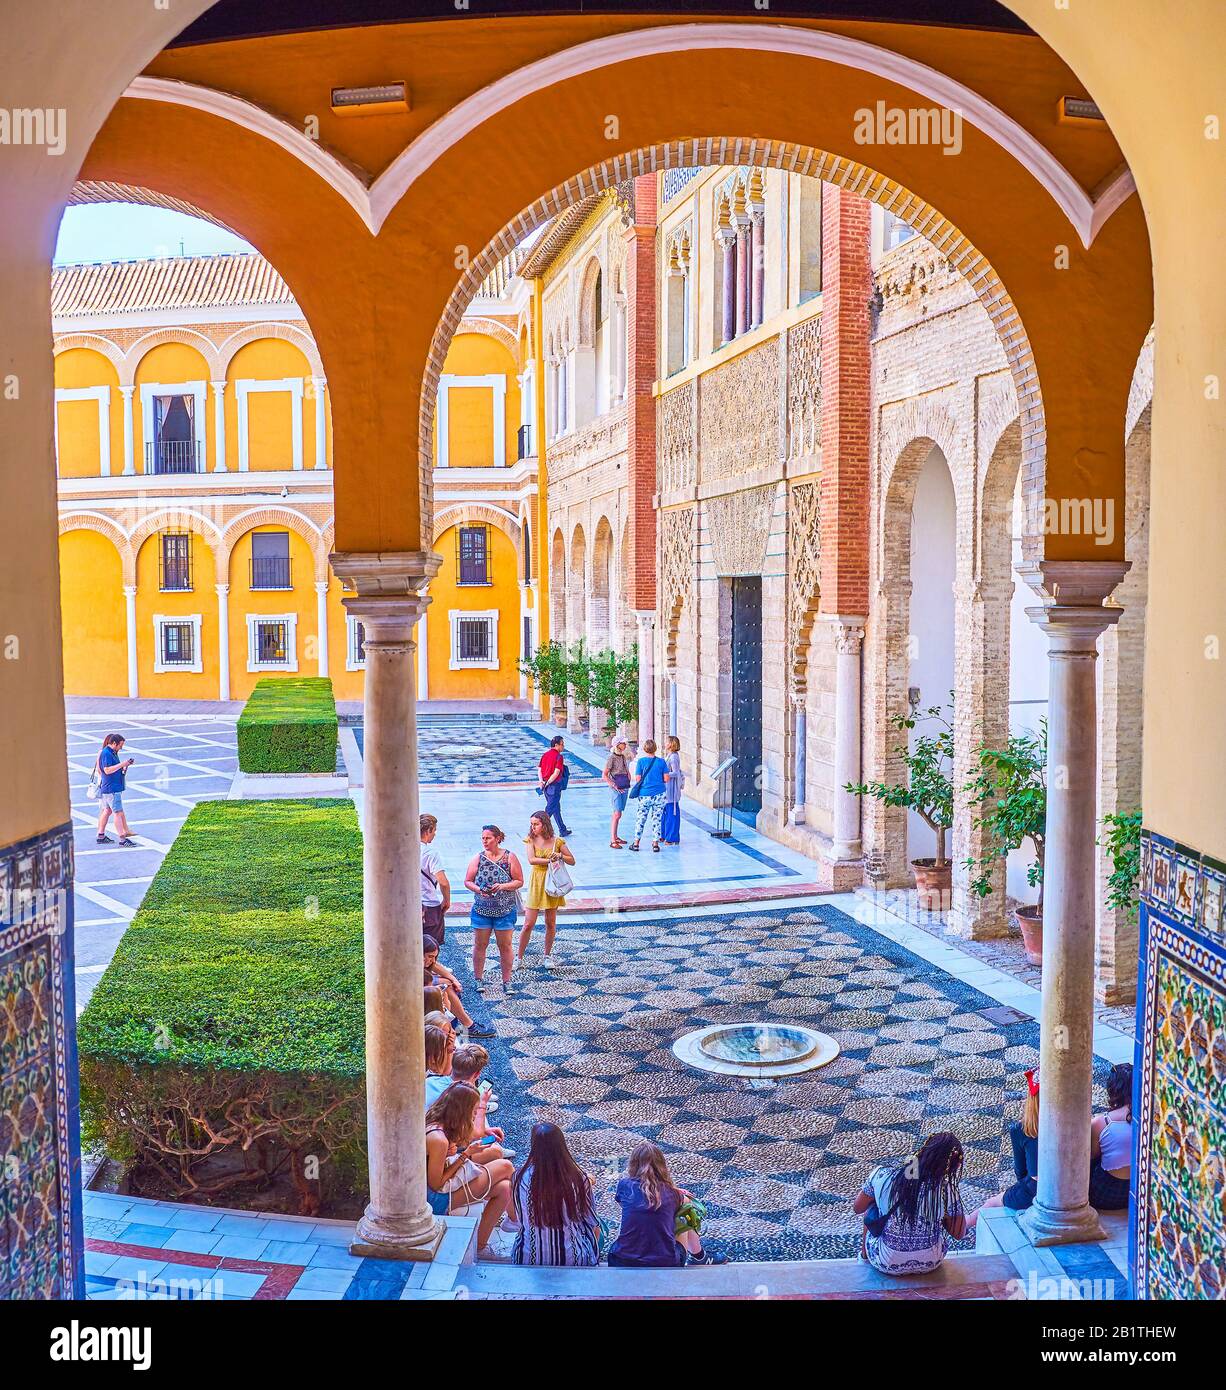 Siviglia, SPAGNA - 1 OTTOBRE 2019: La vista attraverso i portici sul patio de la Monteria del complesso del Palazzo reale Alcazar e adolescenti seduti sulla sta Foto Stock